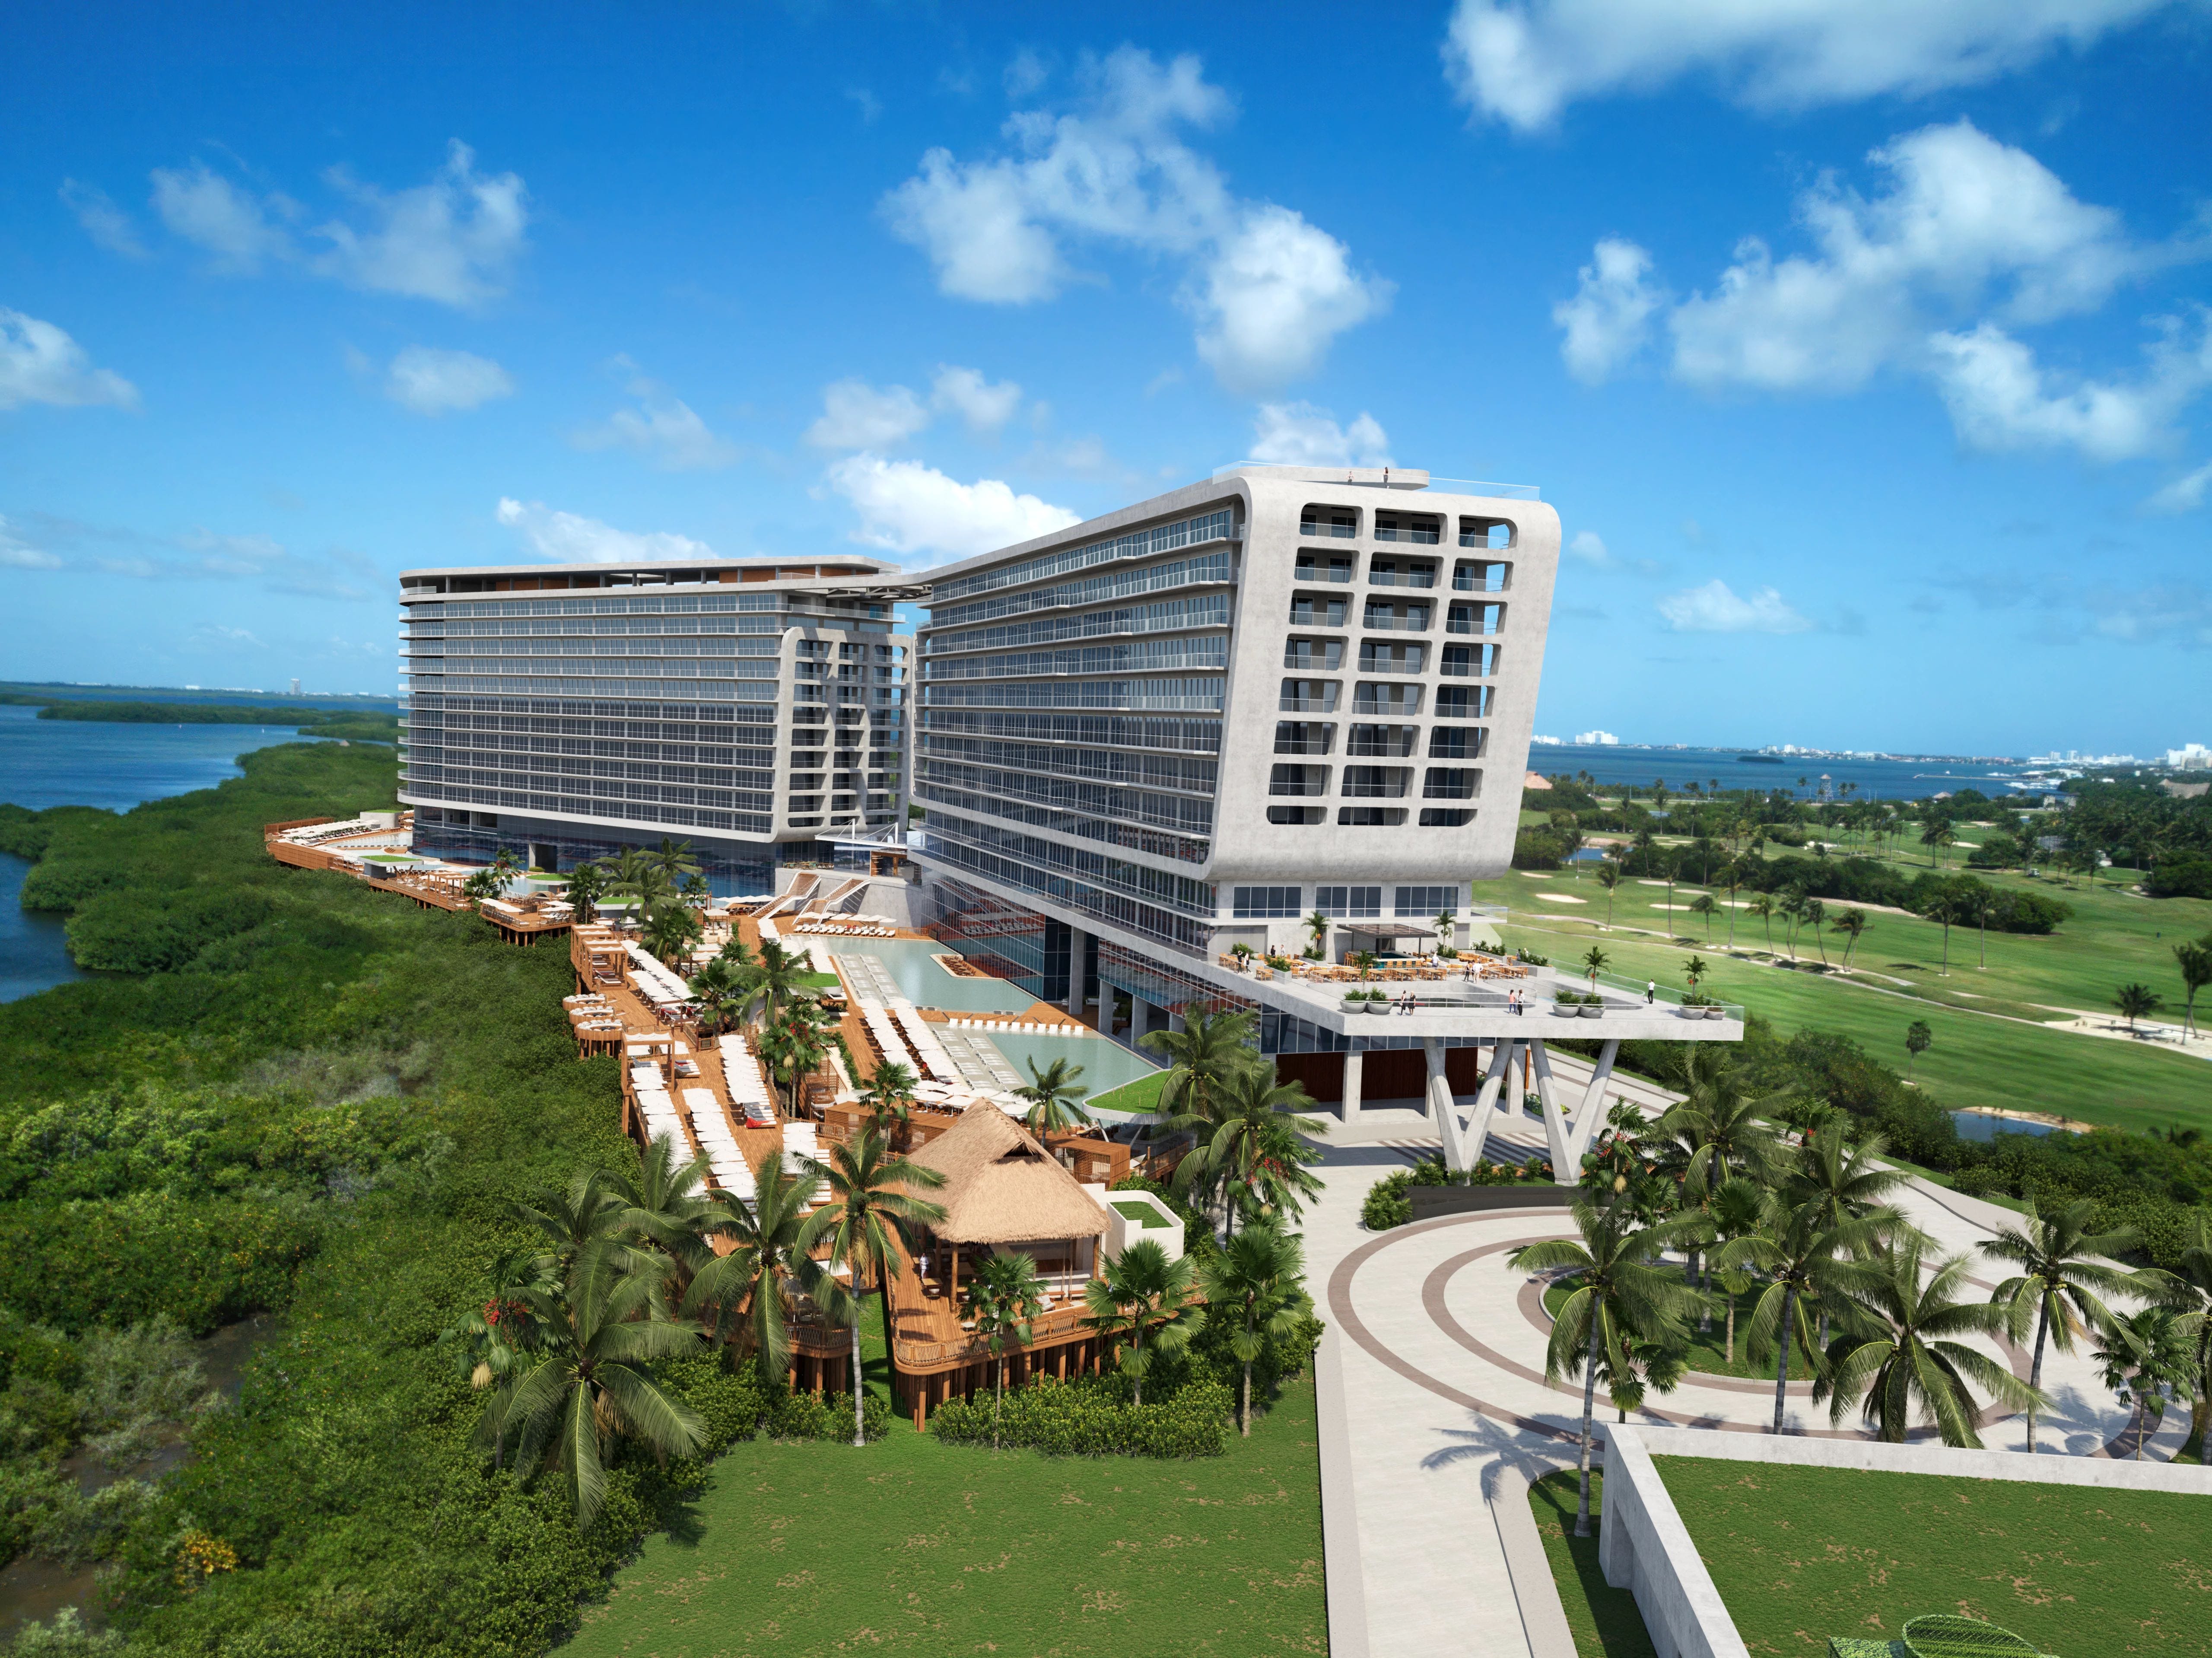 Darstellung des Hyatt Vivid Hotels in Cancun